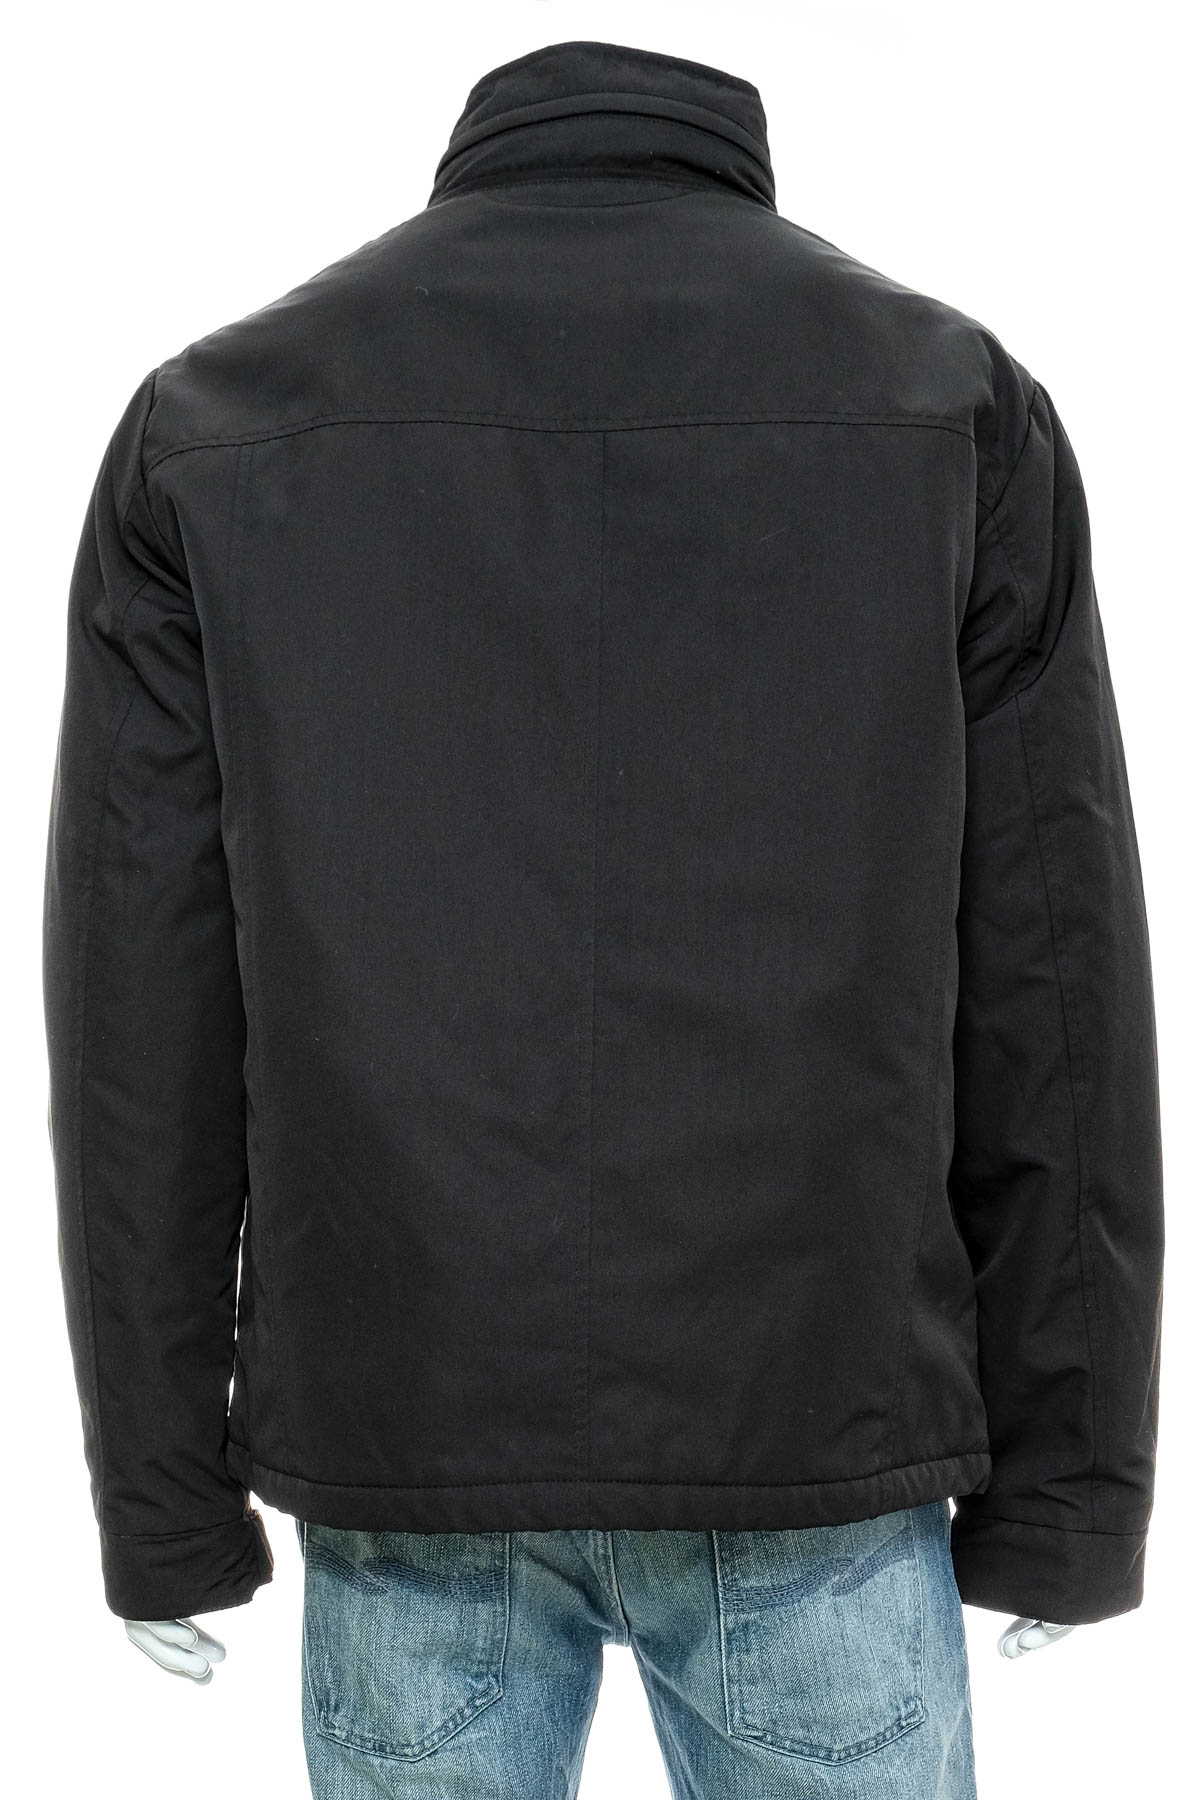 Men's jacket - GEOX - 1